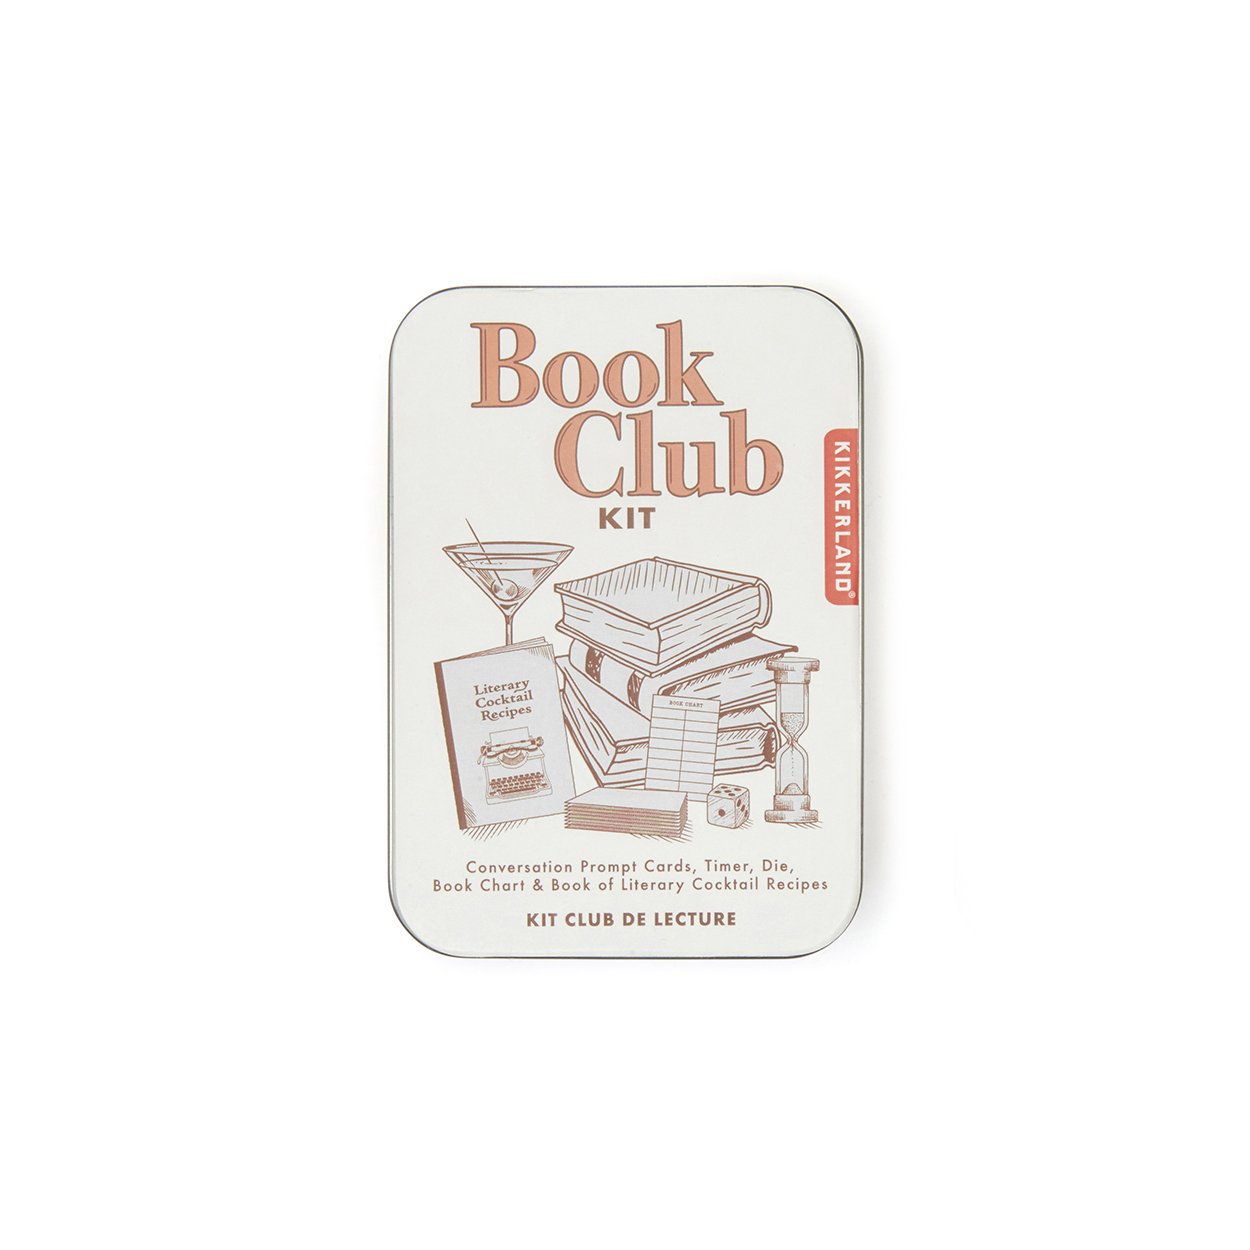 Image of Bookclub Kit in tin